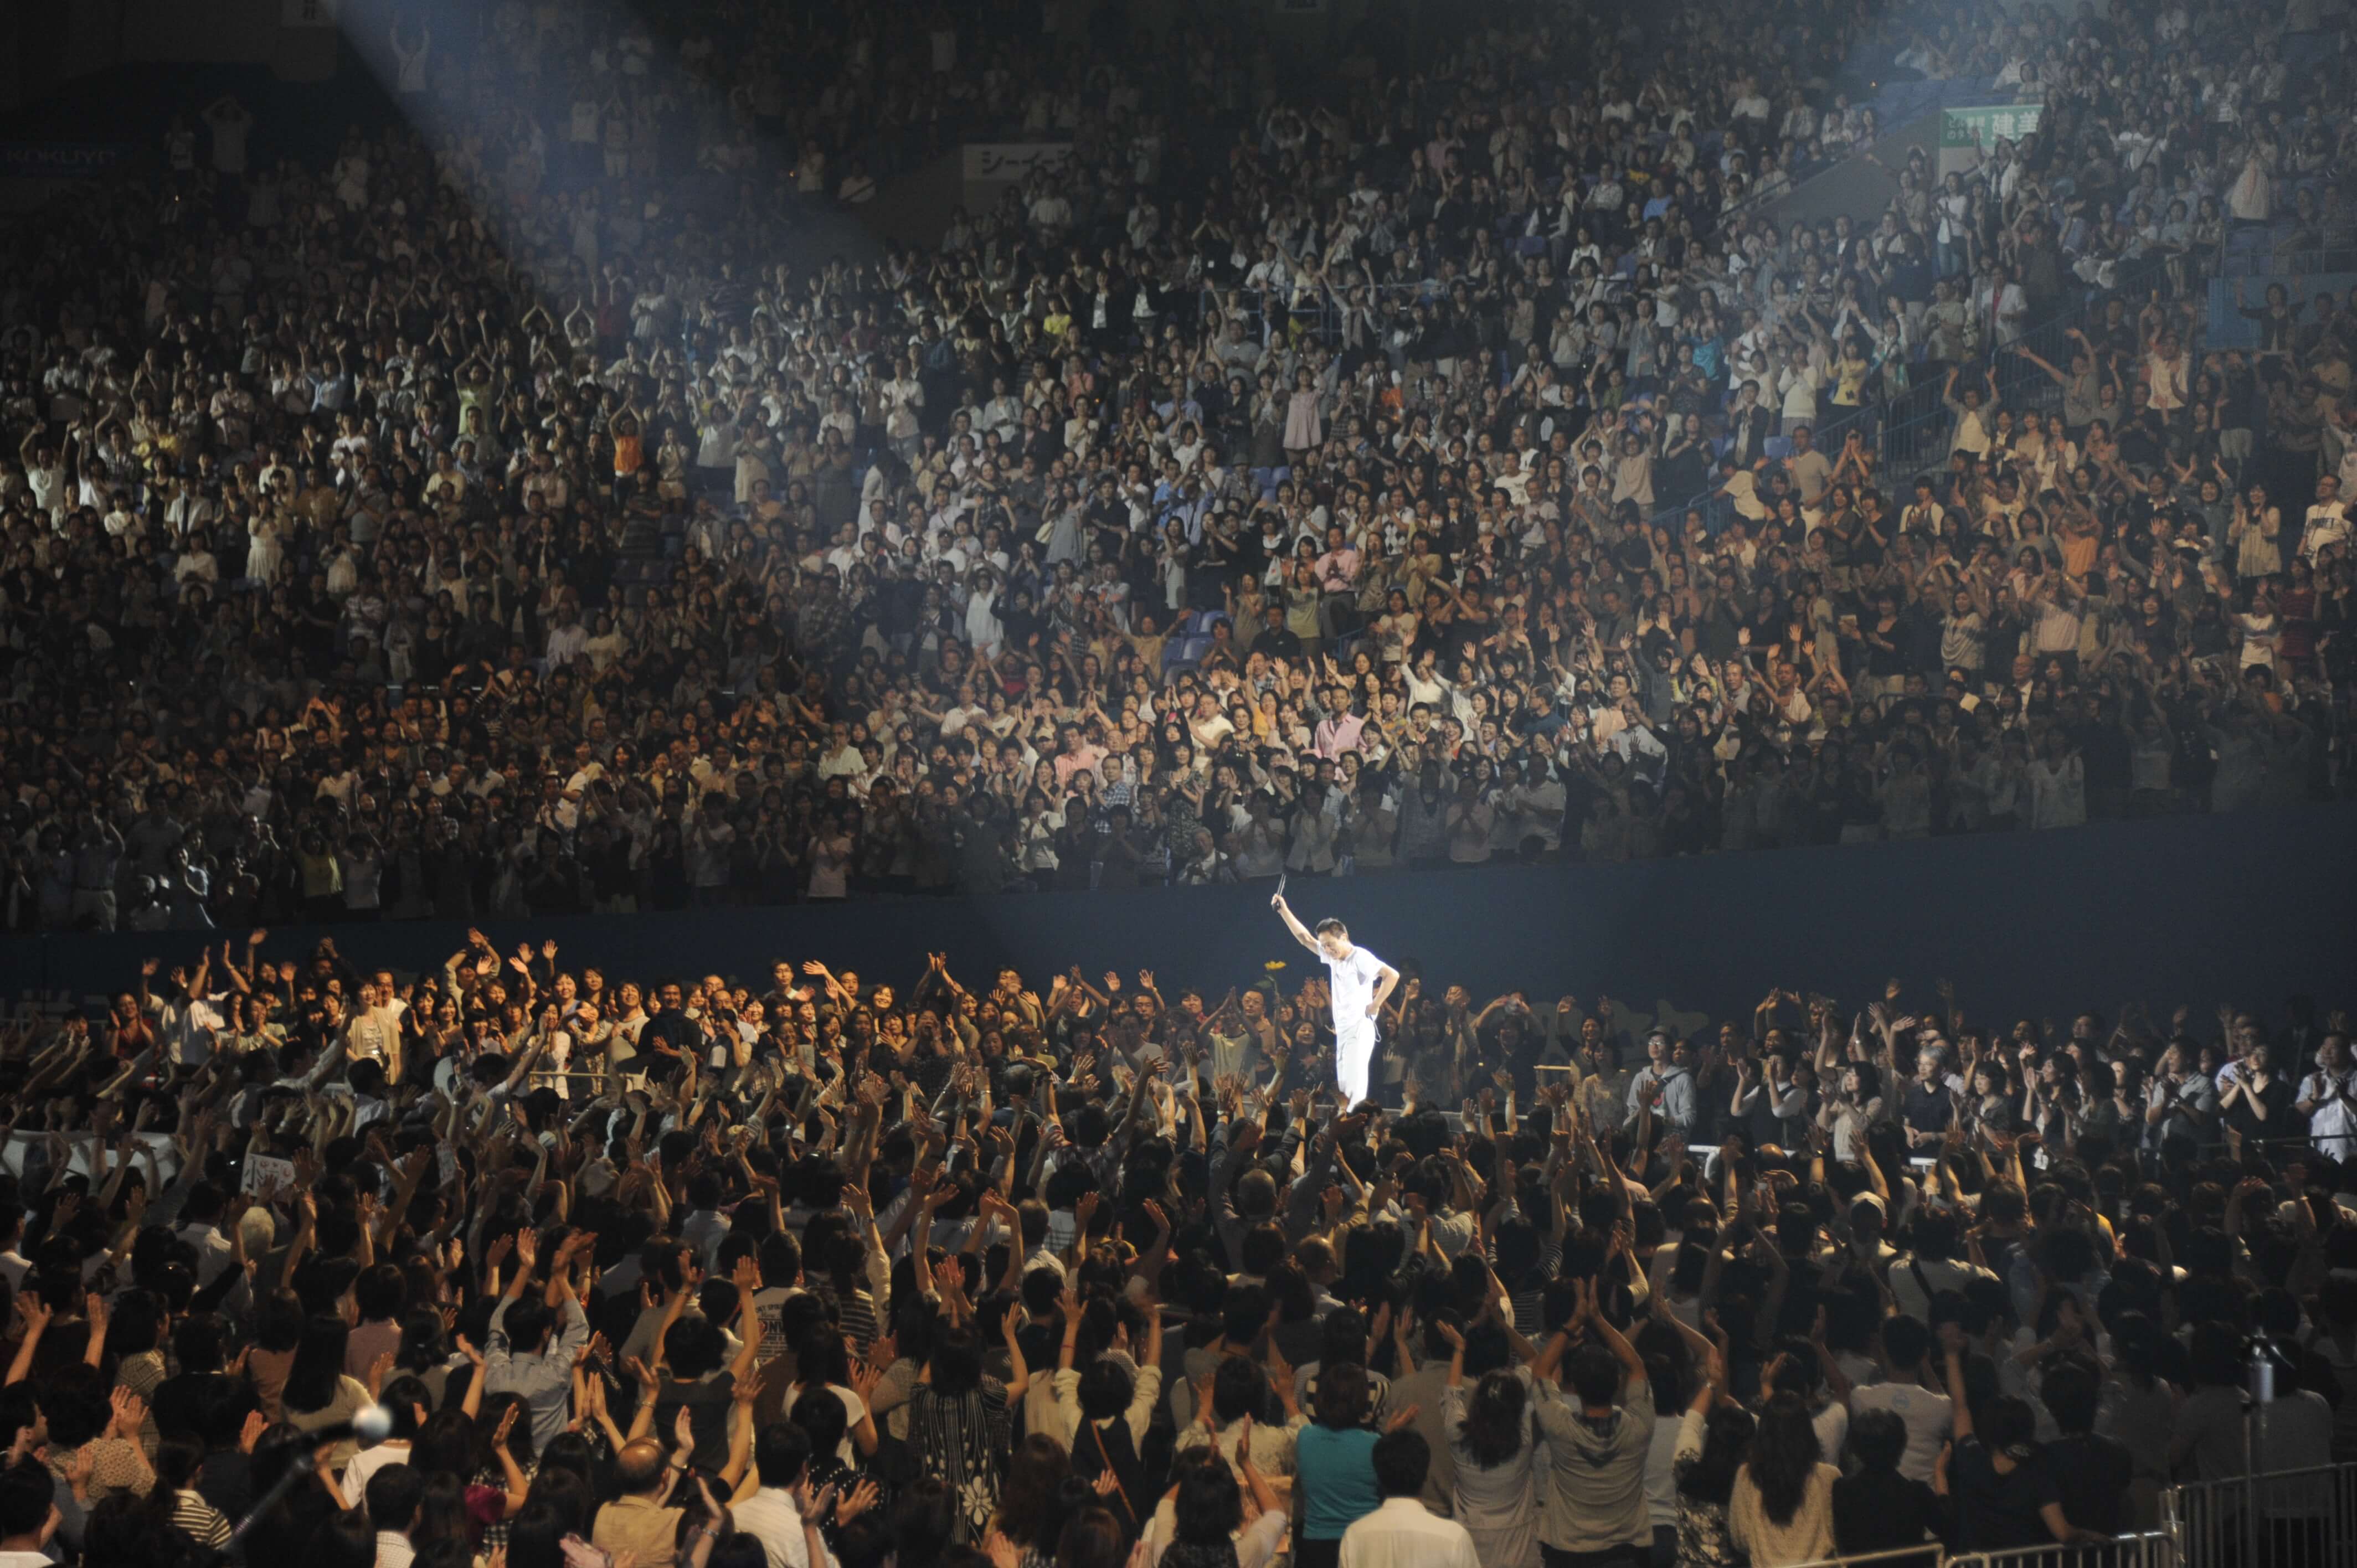 全国ツアー「明治安田生命Presents KAZUMASA ODA TOUR 2011 どーも どーも その日が来るまで」を実施5大ドームツアー 開始